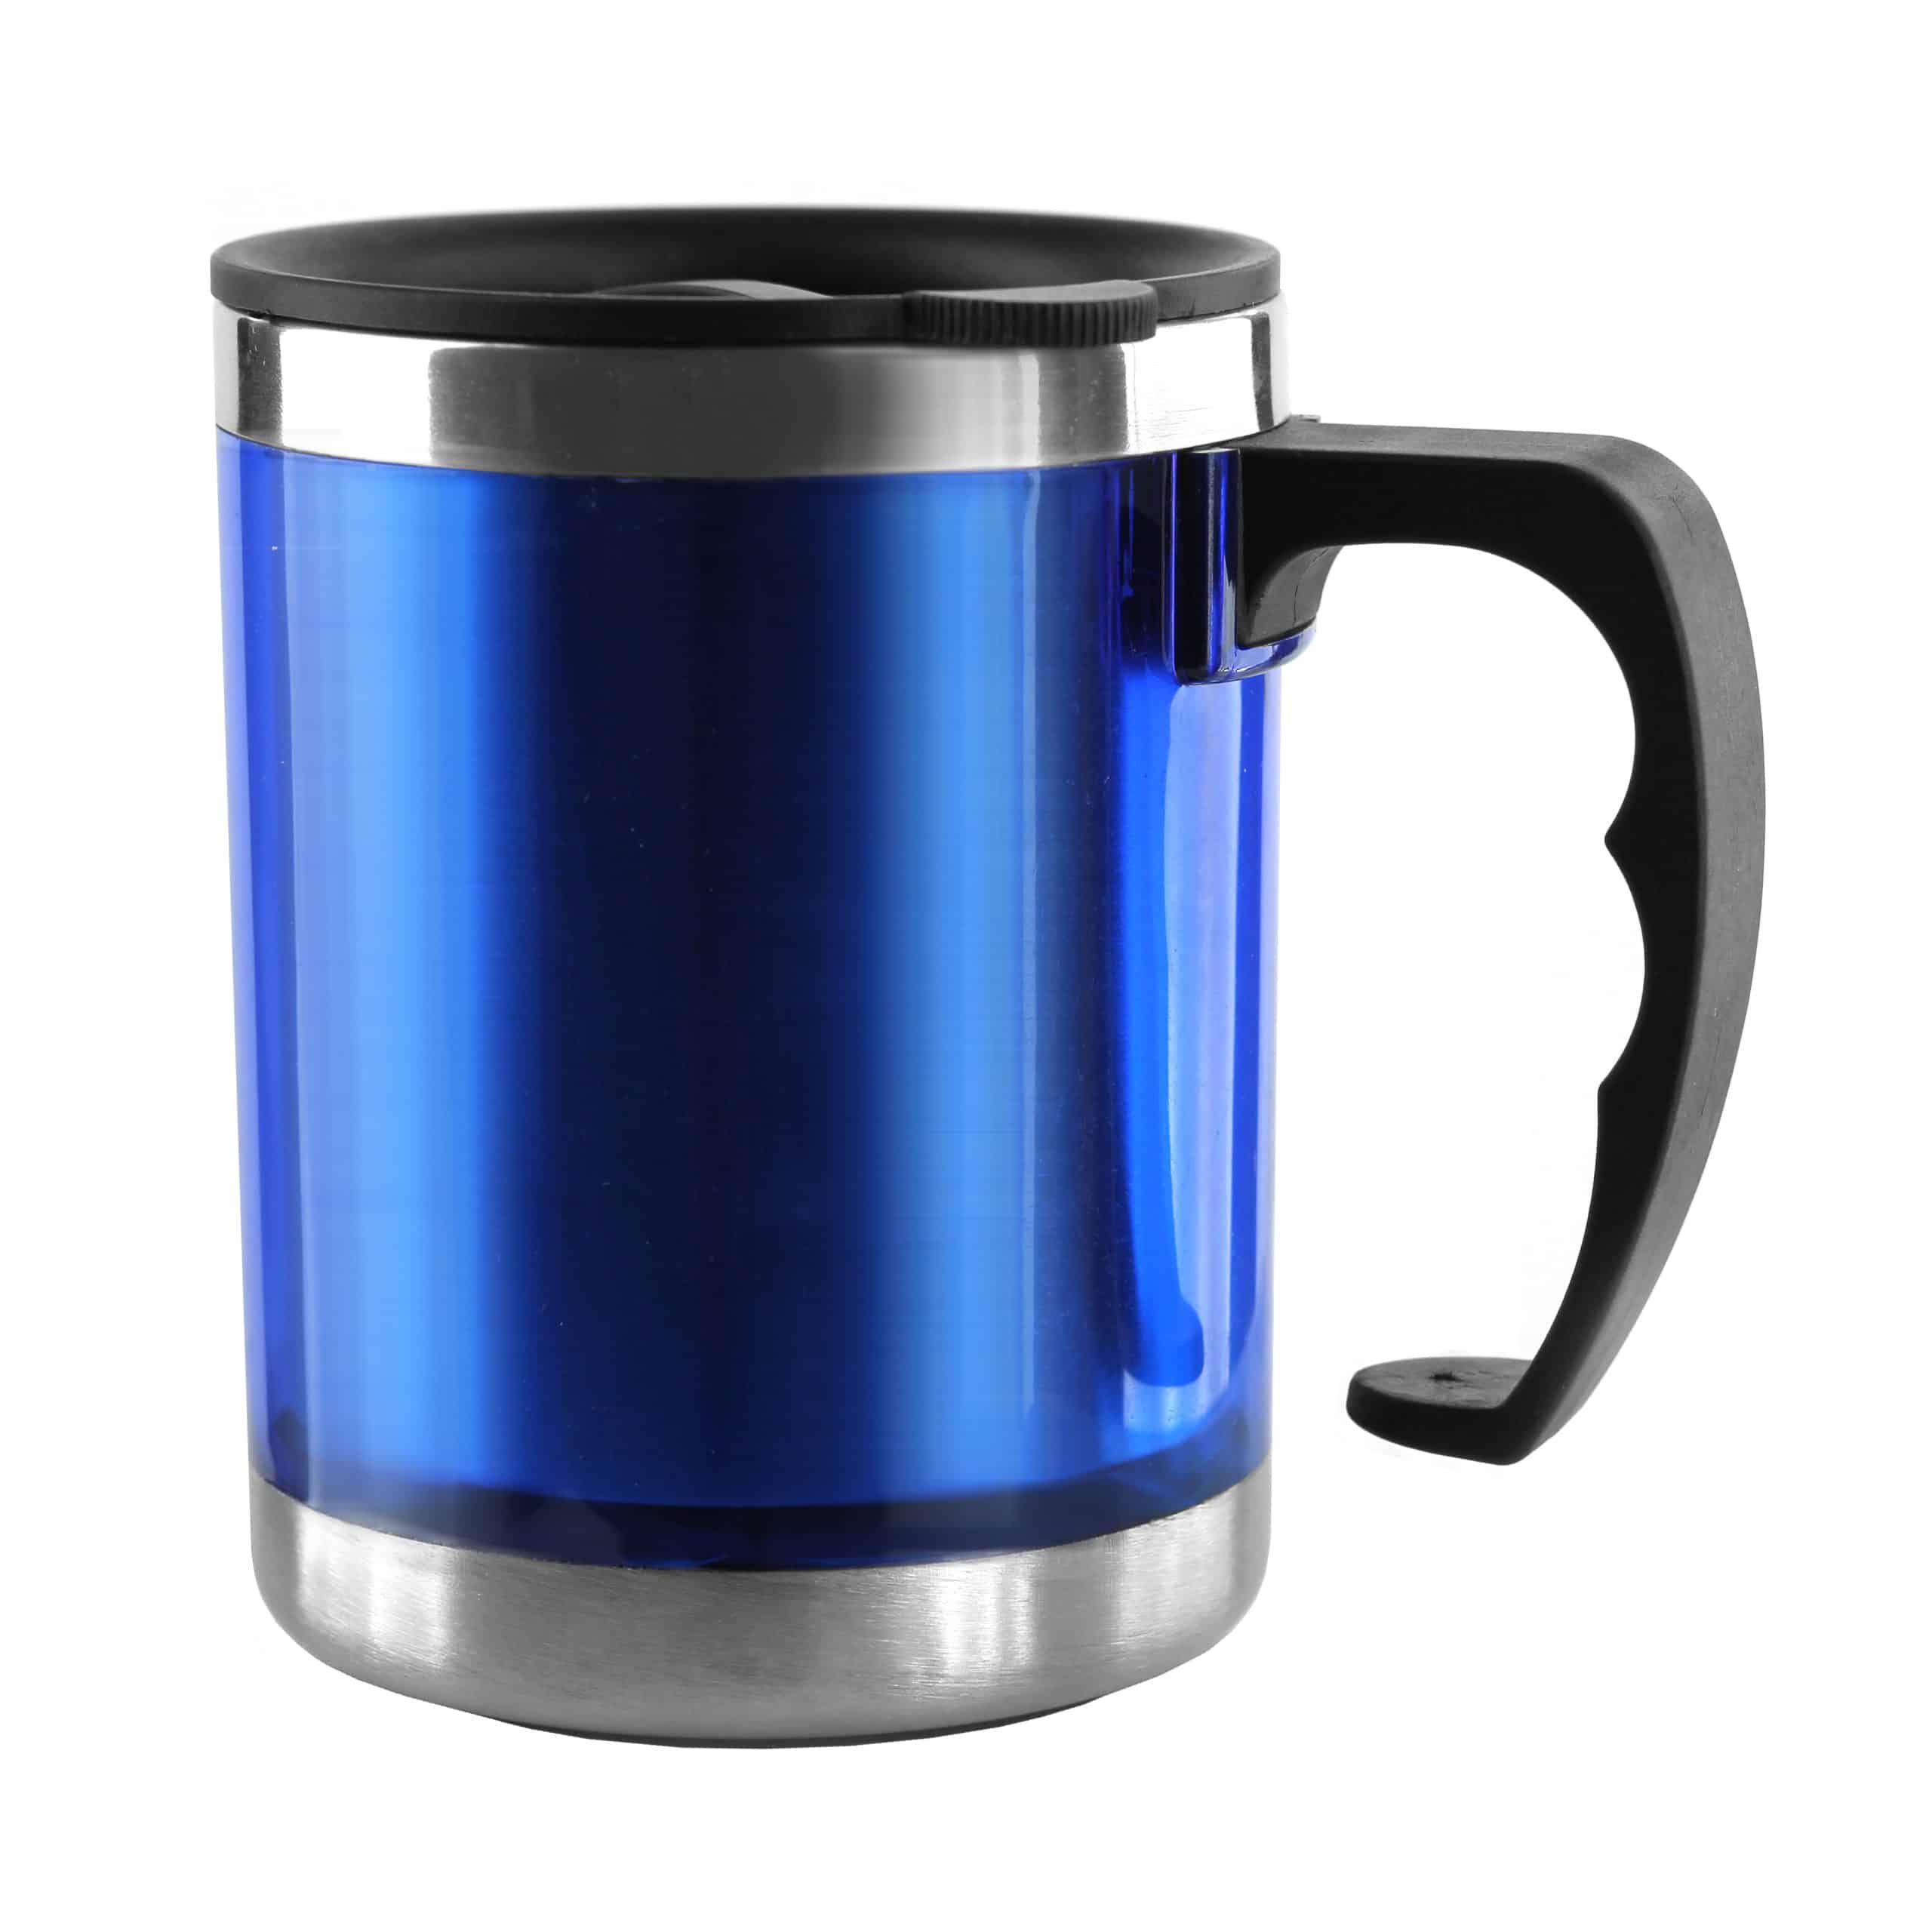 Les dernières tendances en matière de design pour les mugs isothermes